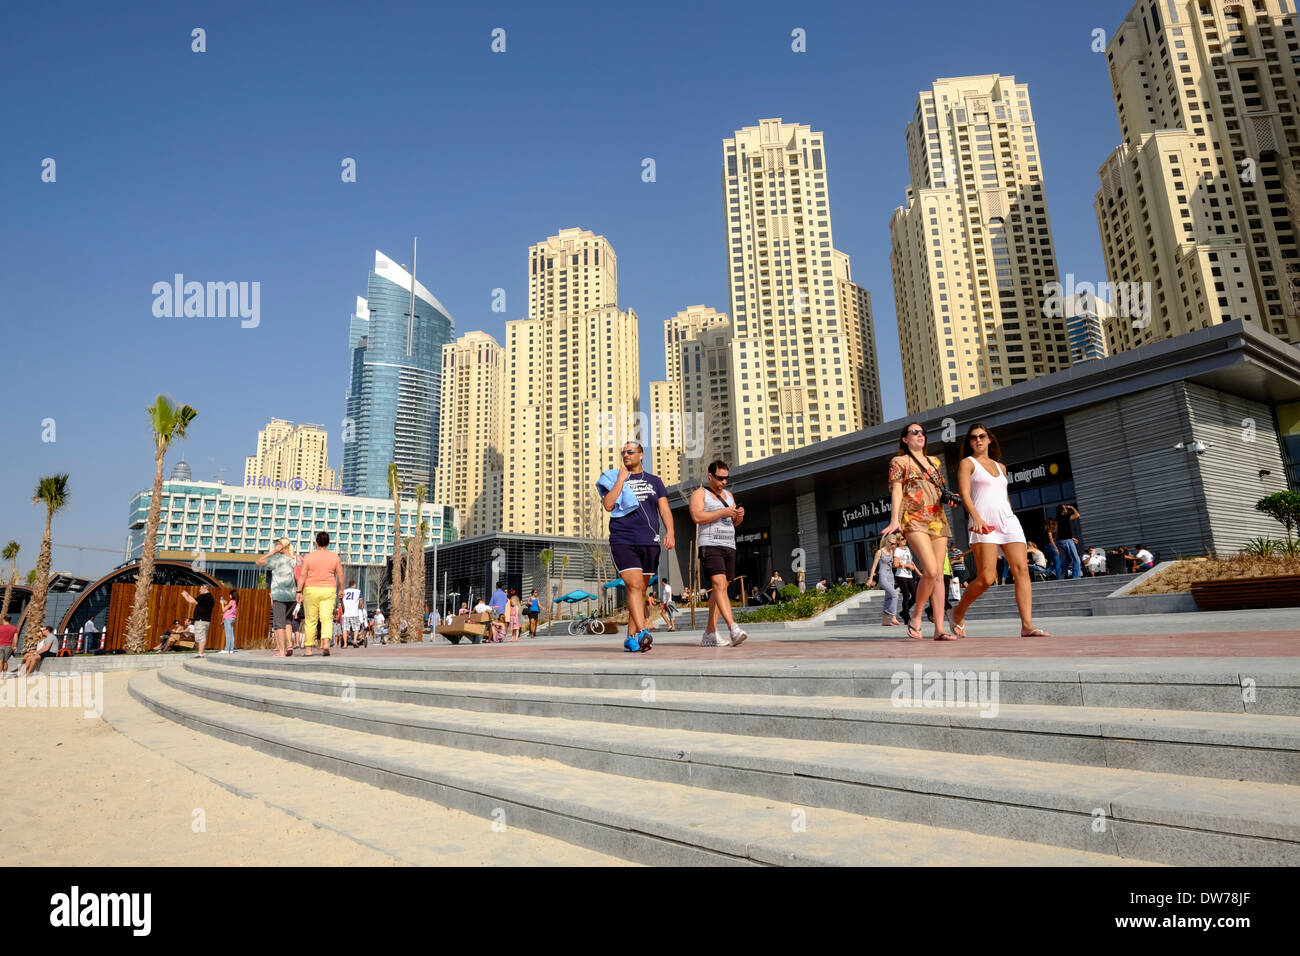 Nuova strada pedonale con i negozi e ristoranti accanto al lungomare spiaggia chiamata la spiaggia fuori la passeggiata a Jumeirah Beach Residence (JBR) Dubai Foto Stock